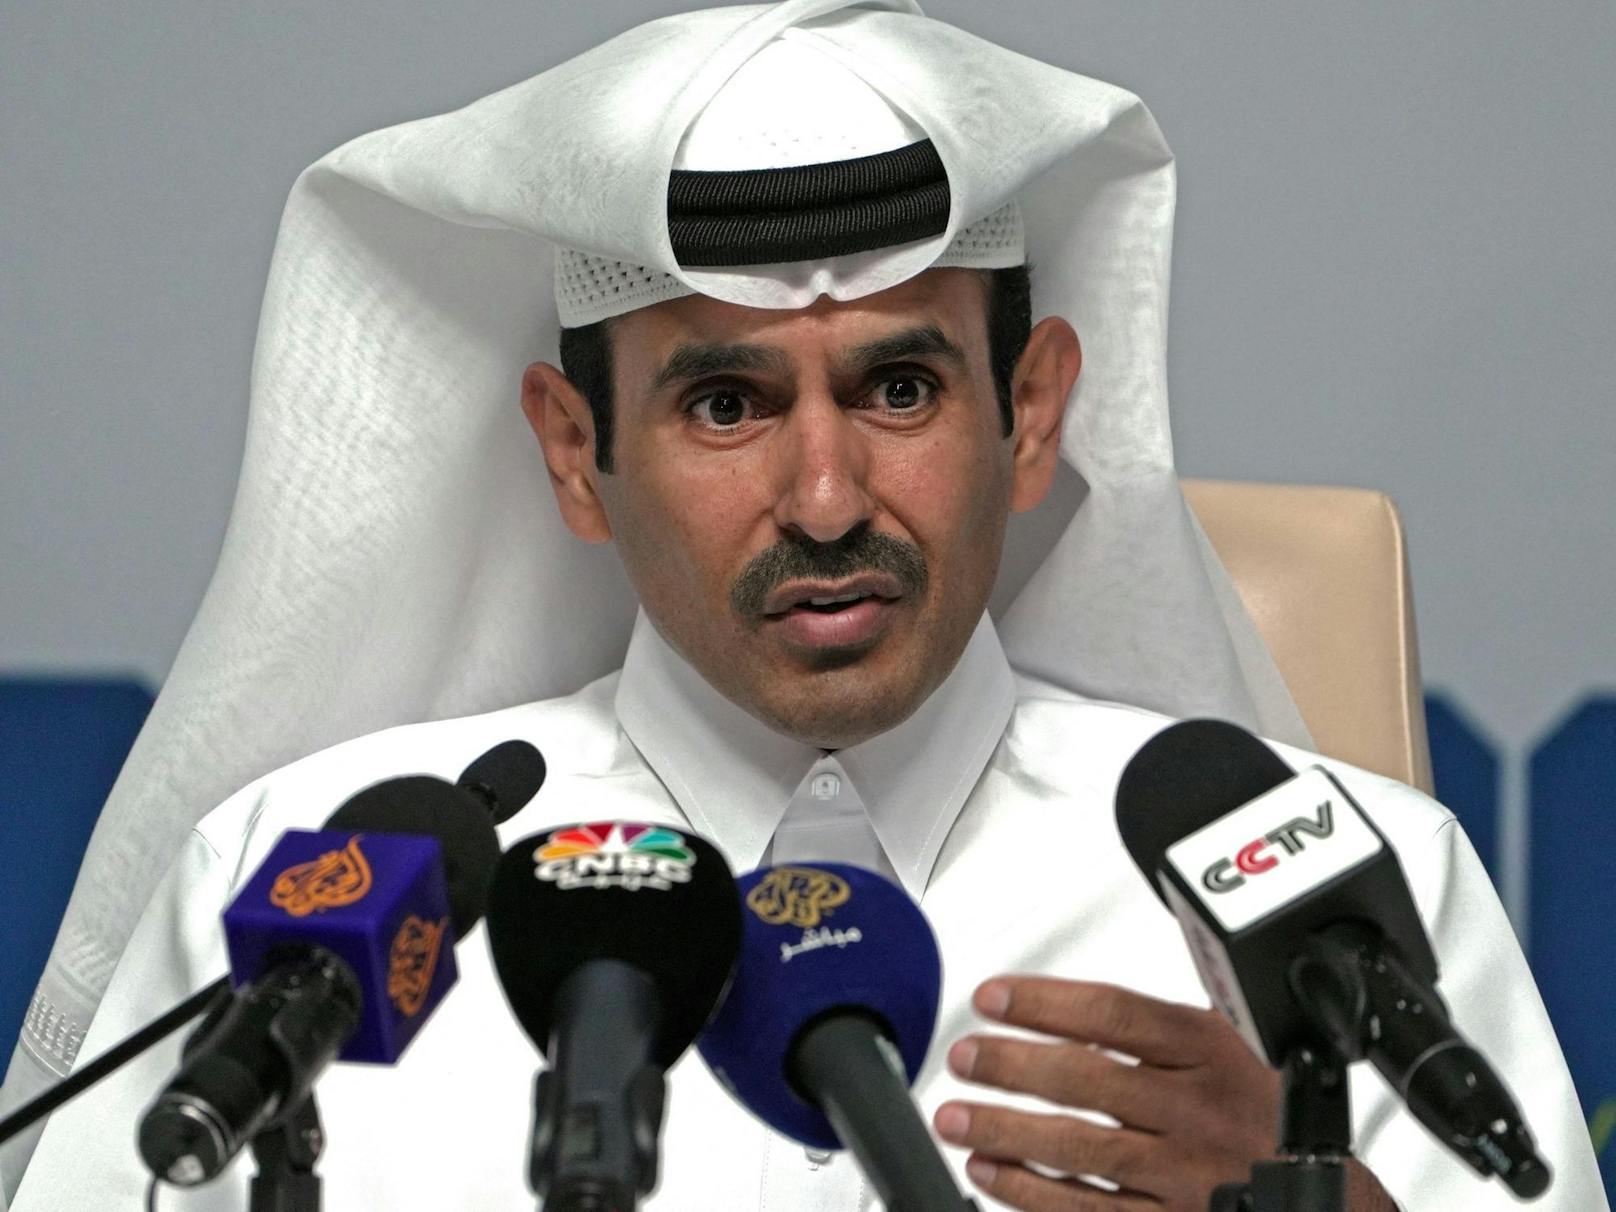 Katar-Minister wütet – "LGBTQ nicht akzeptabel bei uns"